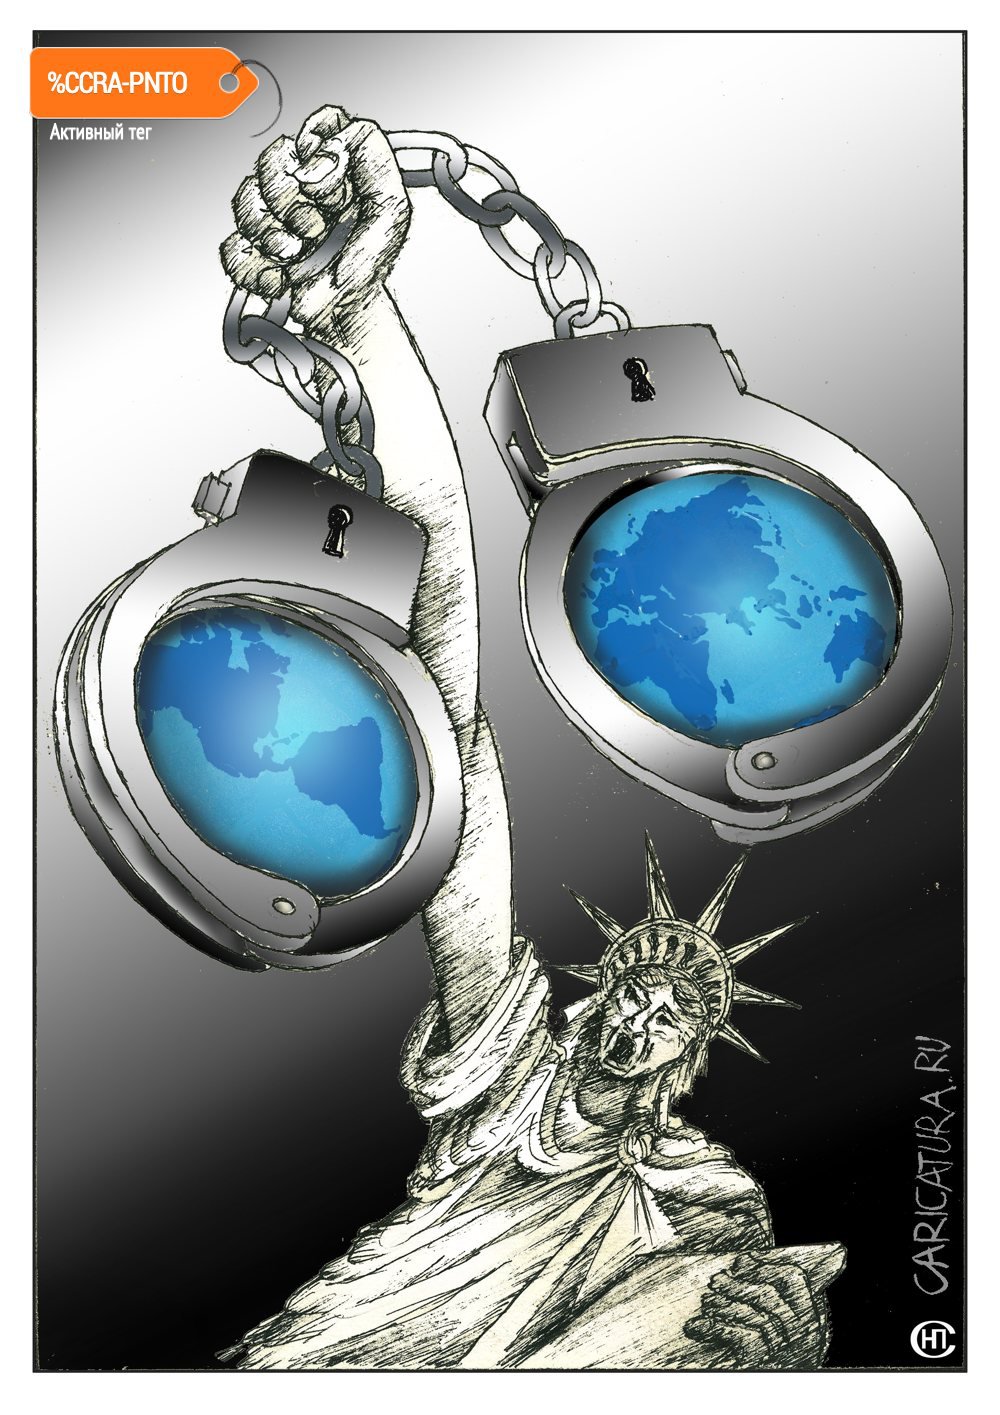 Карикатура "Такова свобода, штатовского сброда", Николай Свириденко